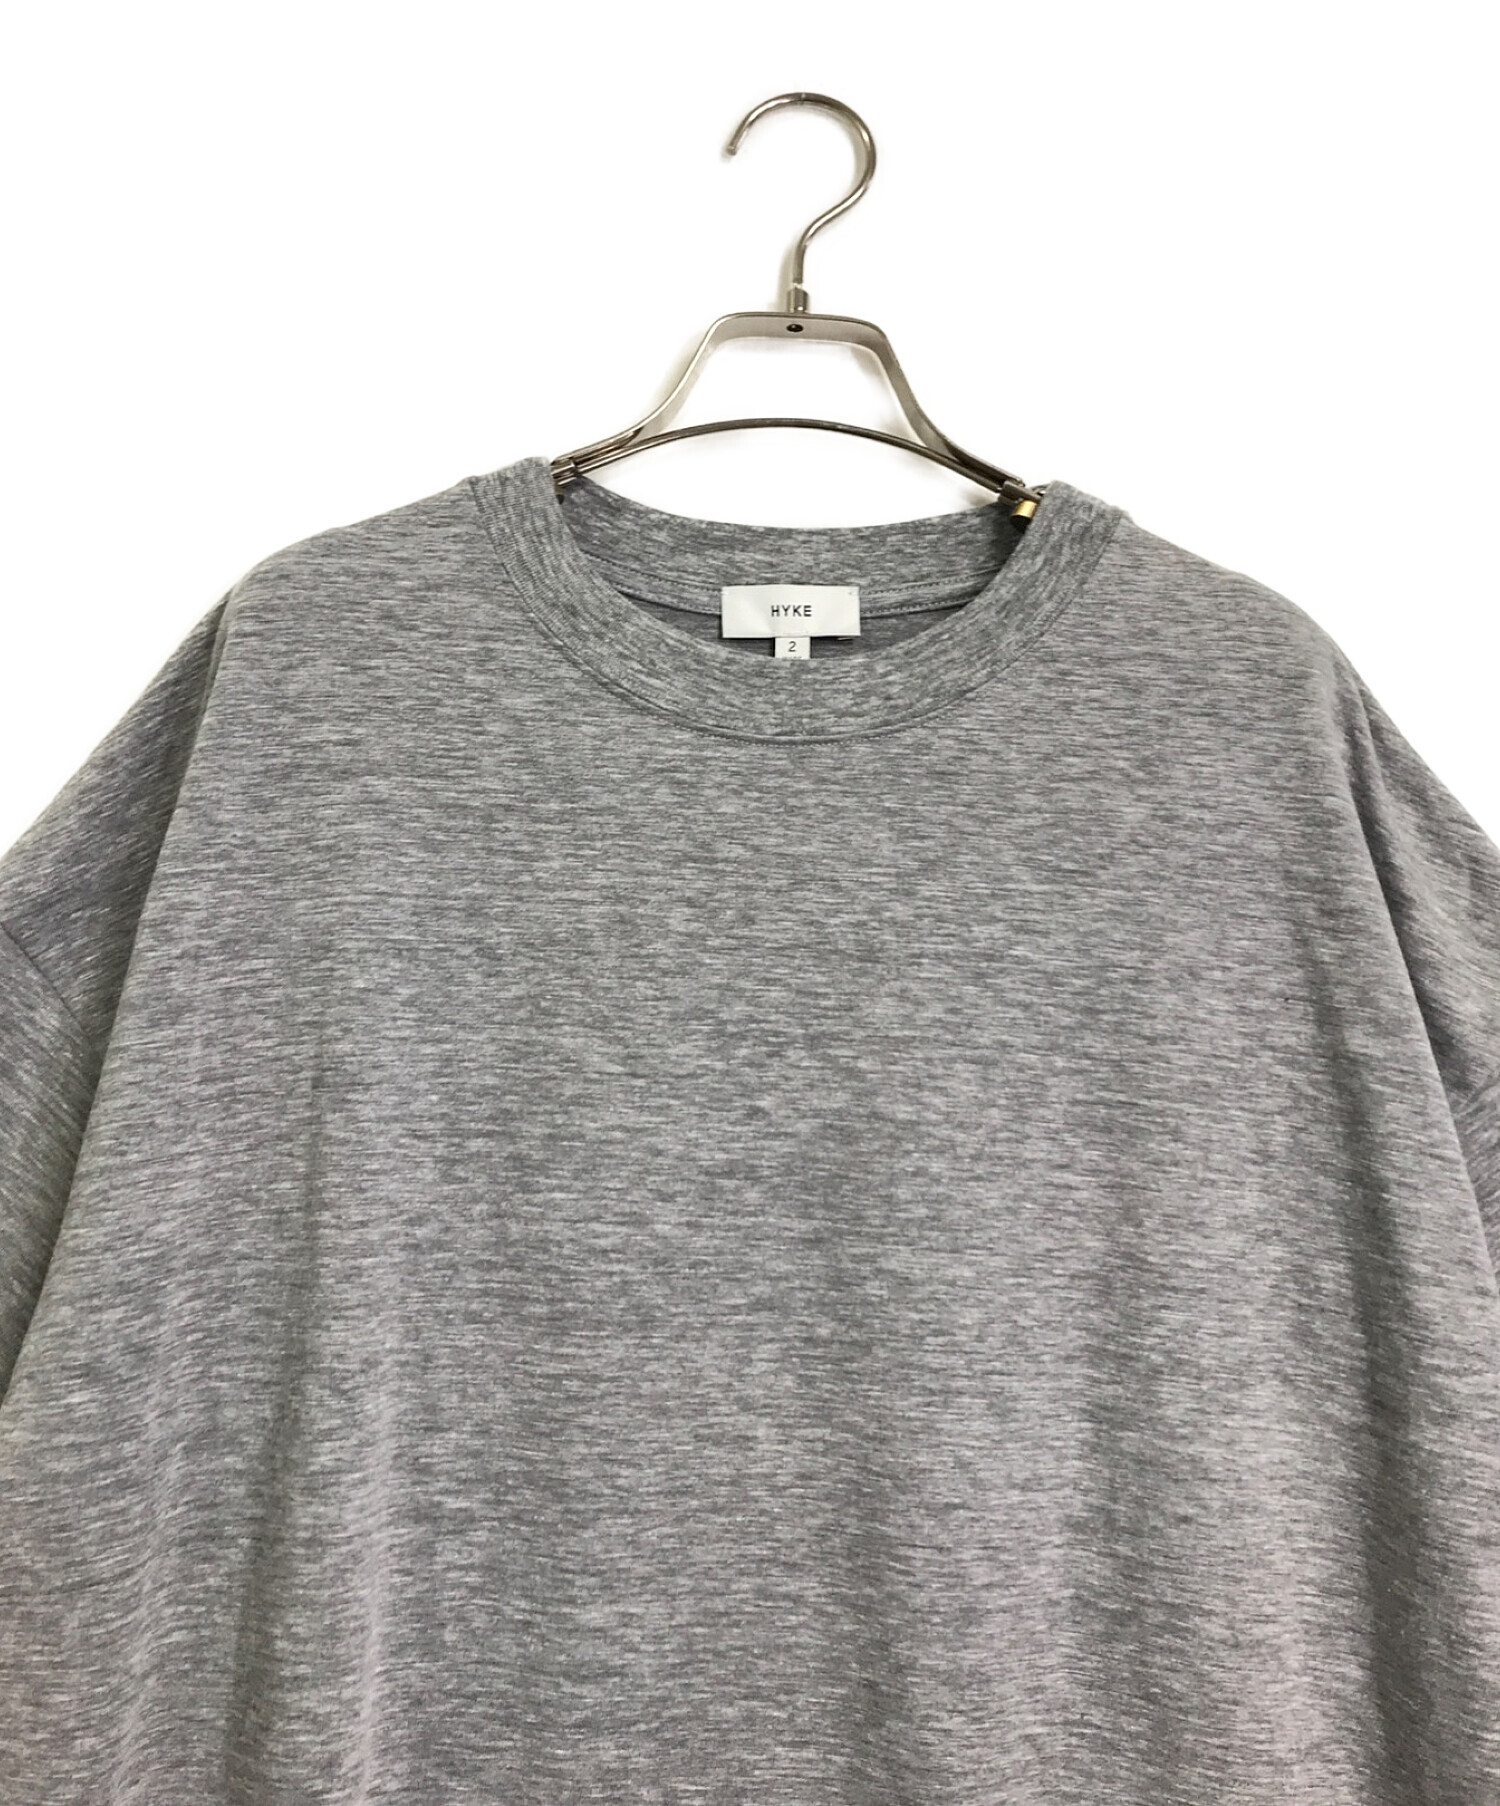 HYKE (ハイク) Tシャツ グレー サイズ:2 未使用品